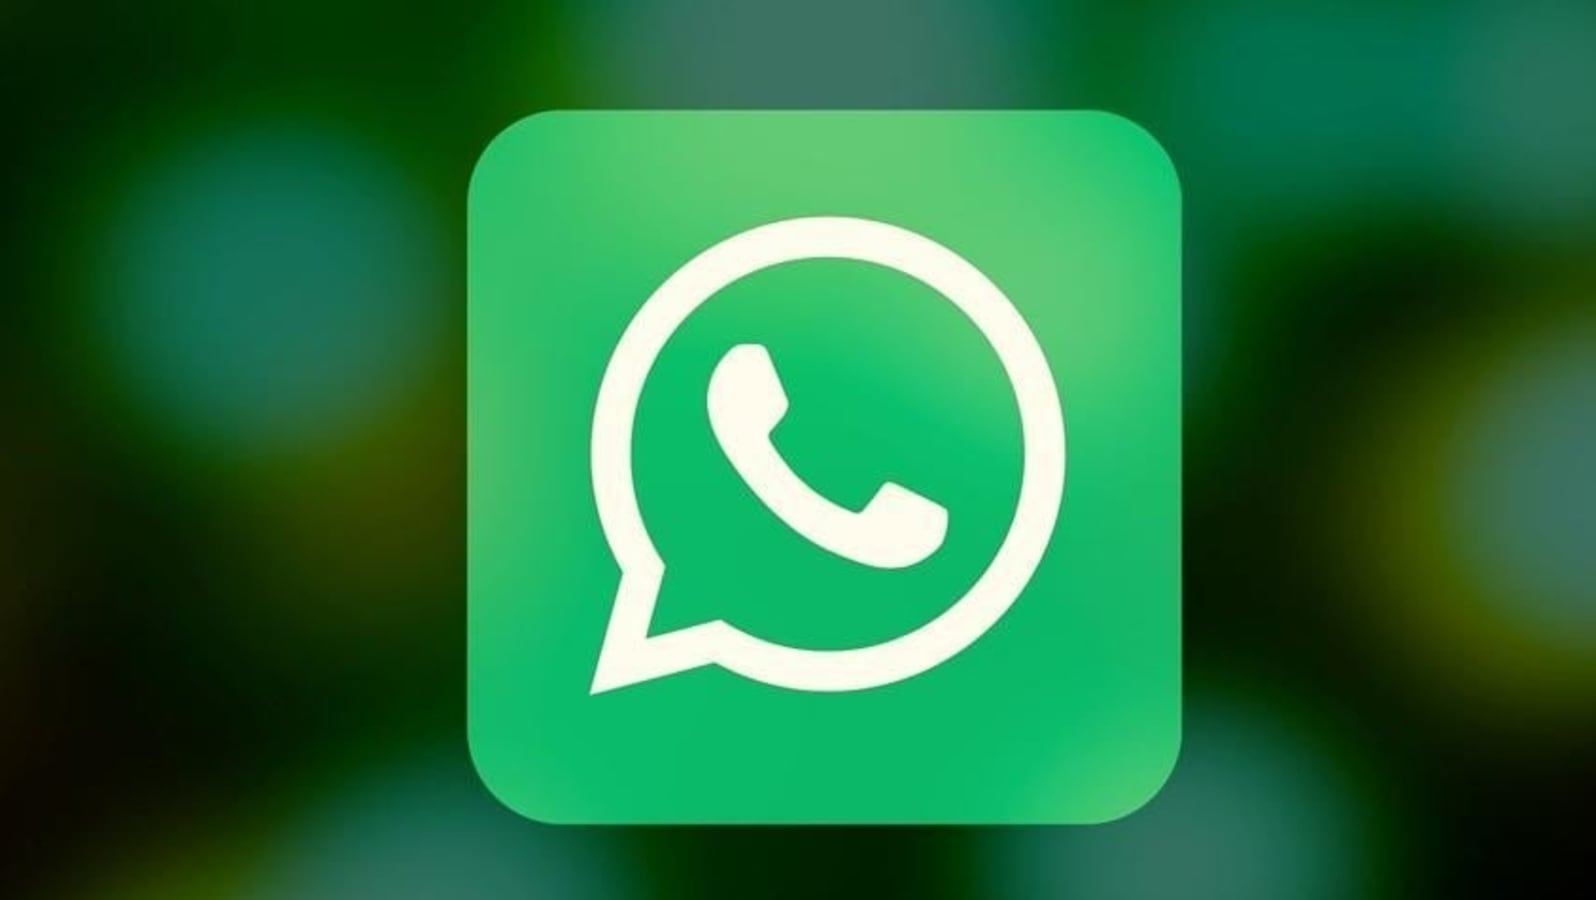 Característica de desarrollo de WhatsApp para enviar fotos en calidad original: informe